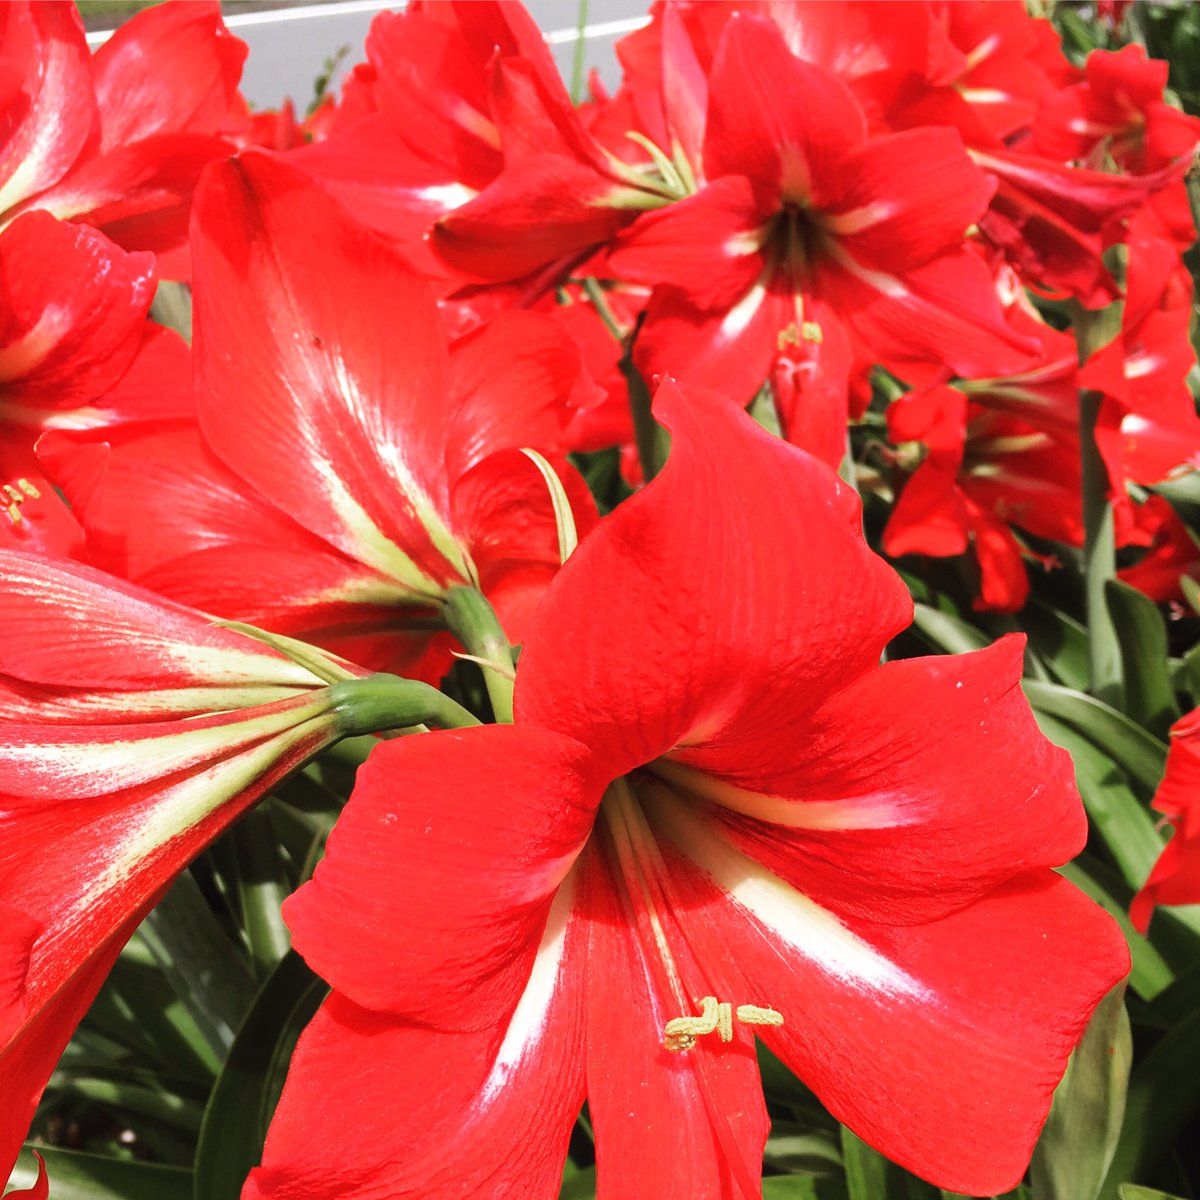 池ポチャ野郎 花が大きく鮮やかな色の花 アマリリス 花 フラワー 赤い花 球根植物 鮮やかな色の花 大輪の花 太い茎 百合に似た花 大きな花